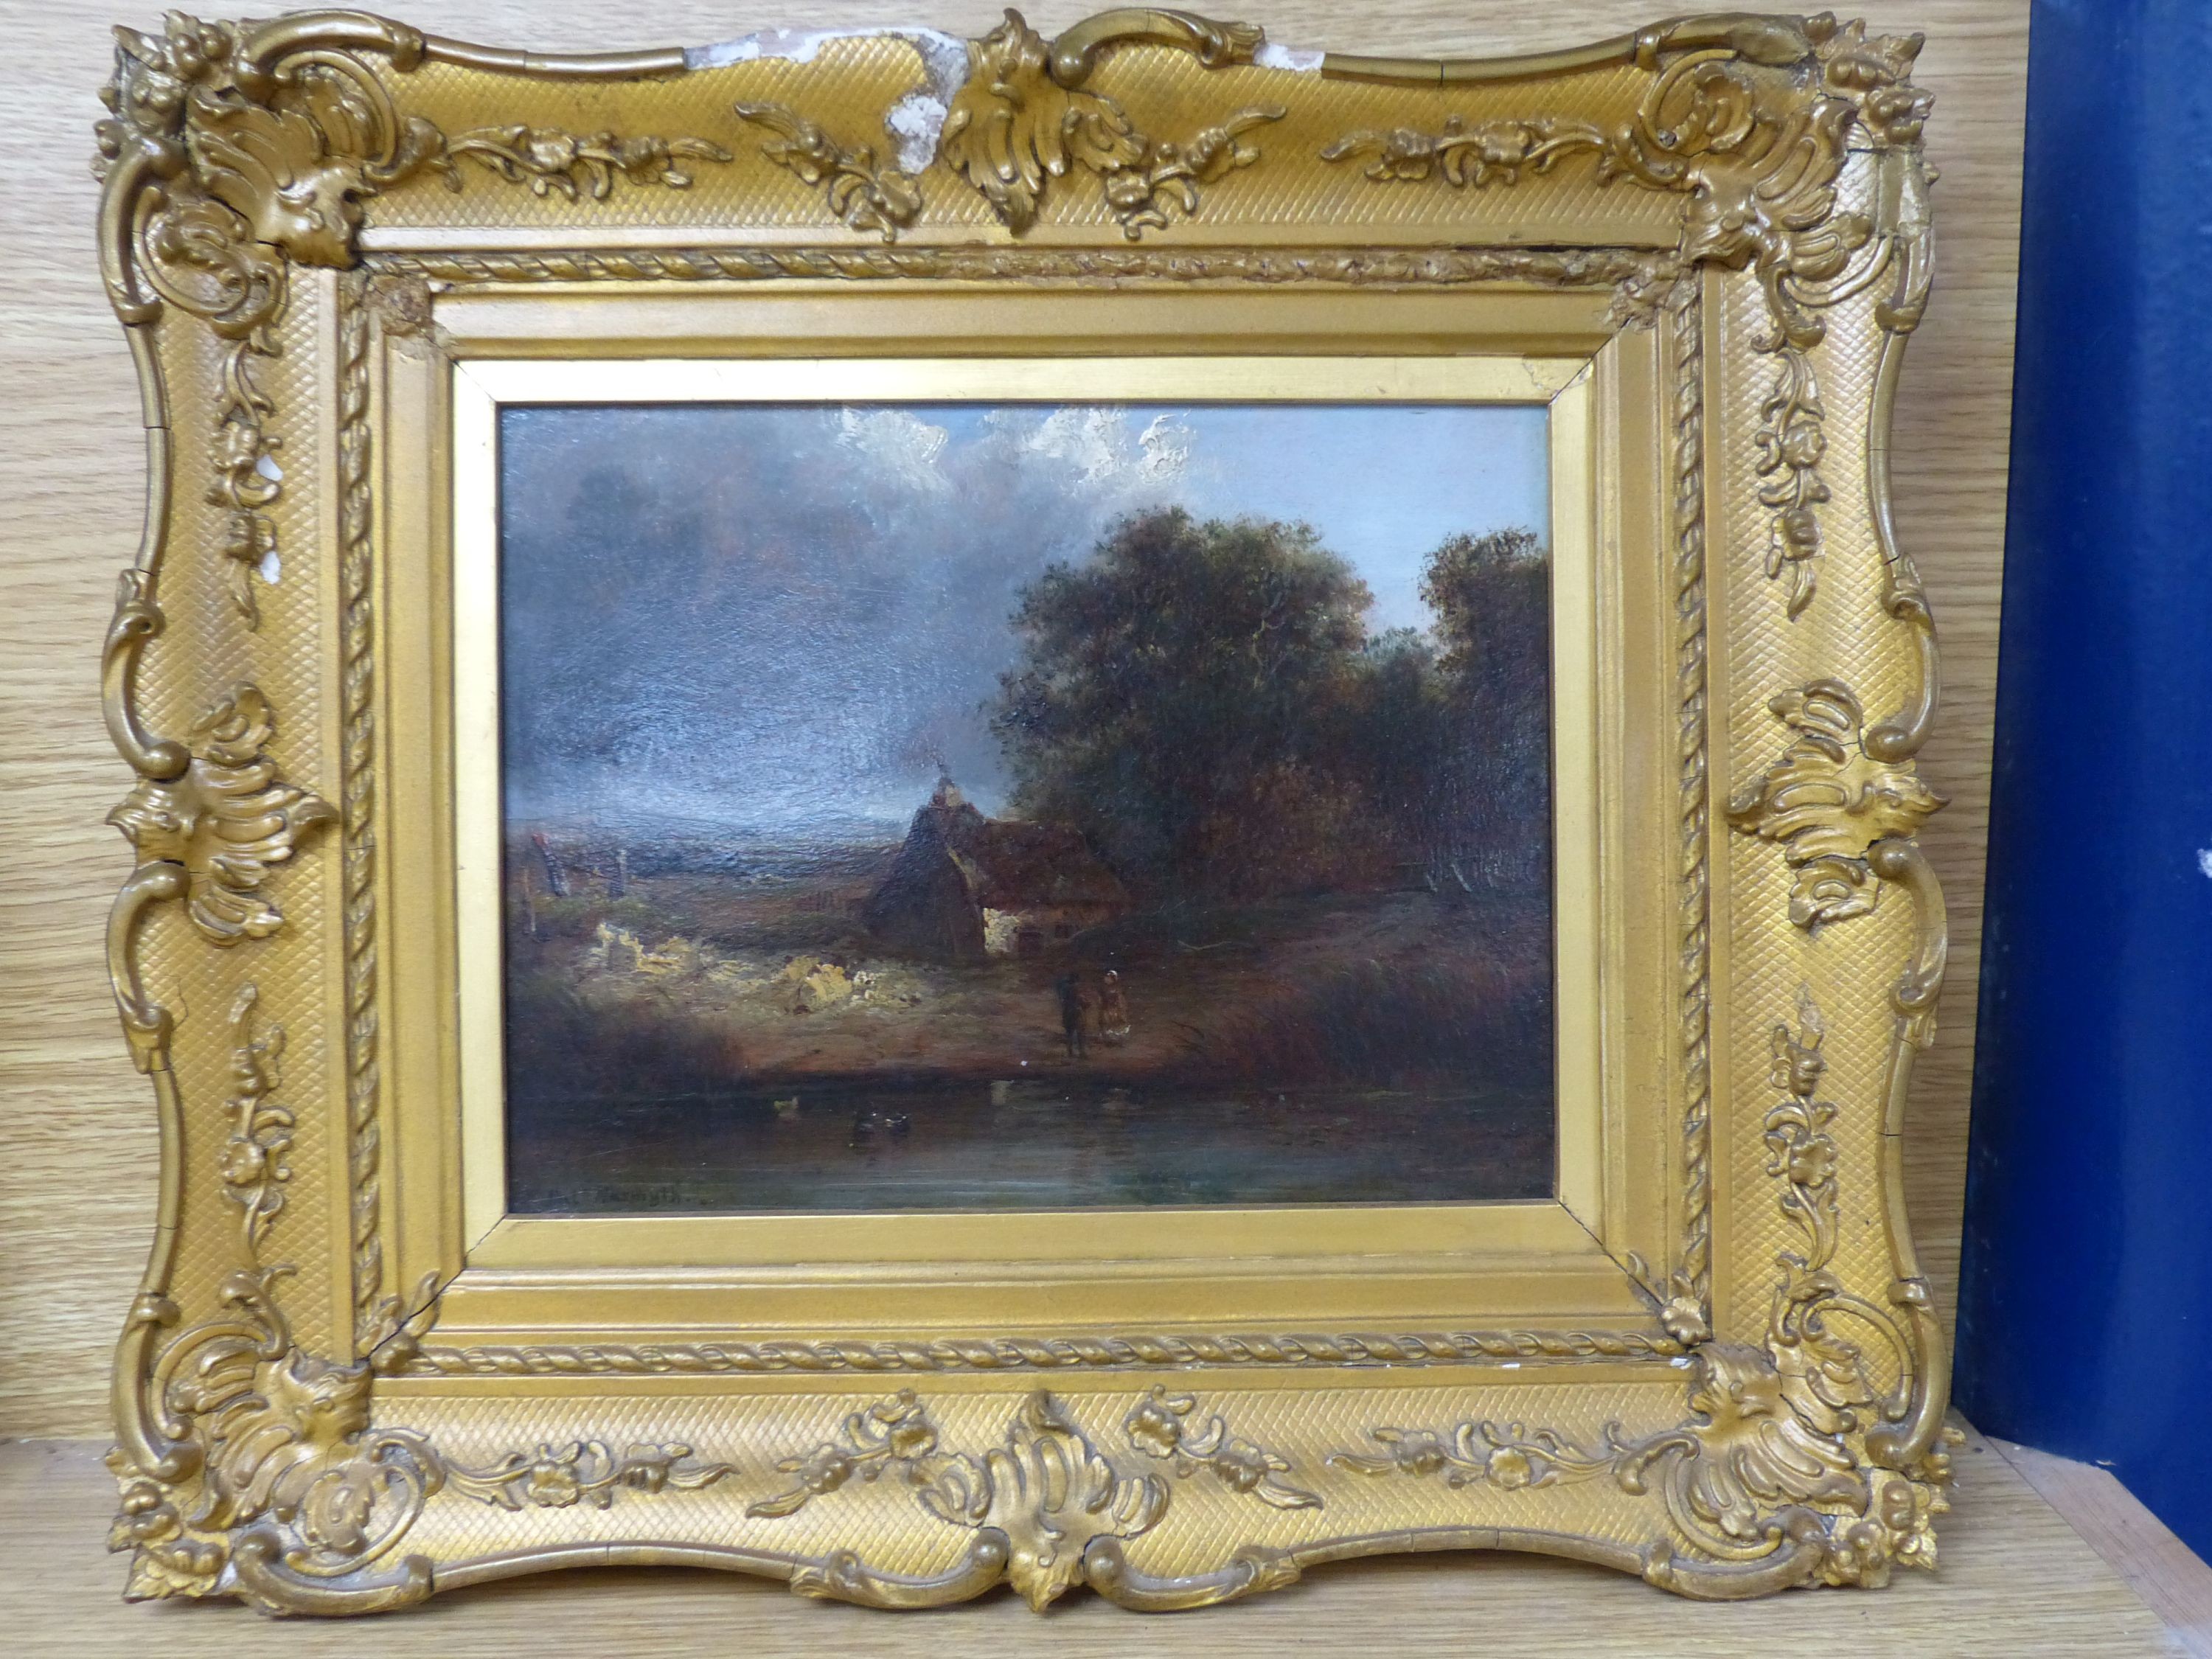 Patrick Nasmyth (1787-1831), oil on board, Figures beside a cottage in a landscape, signed, 17 x 22cm